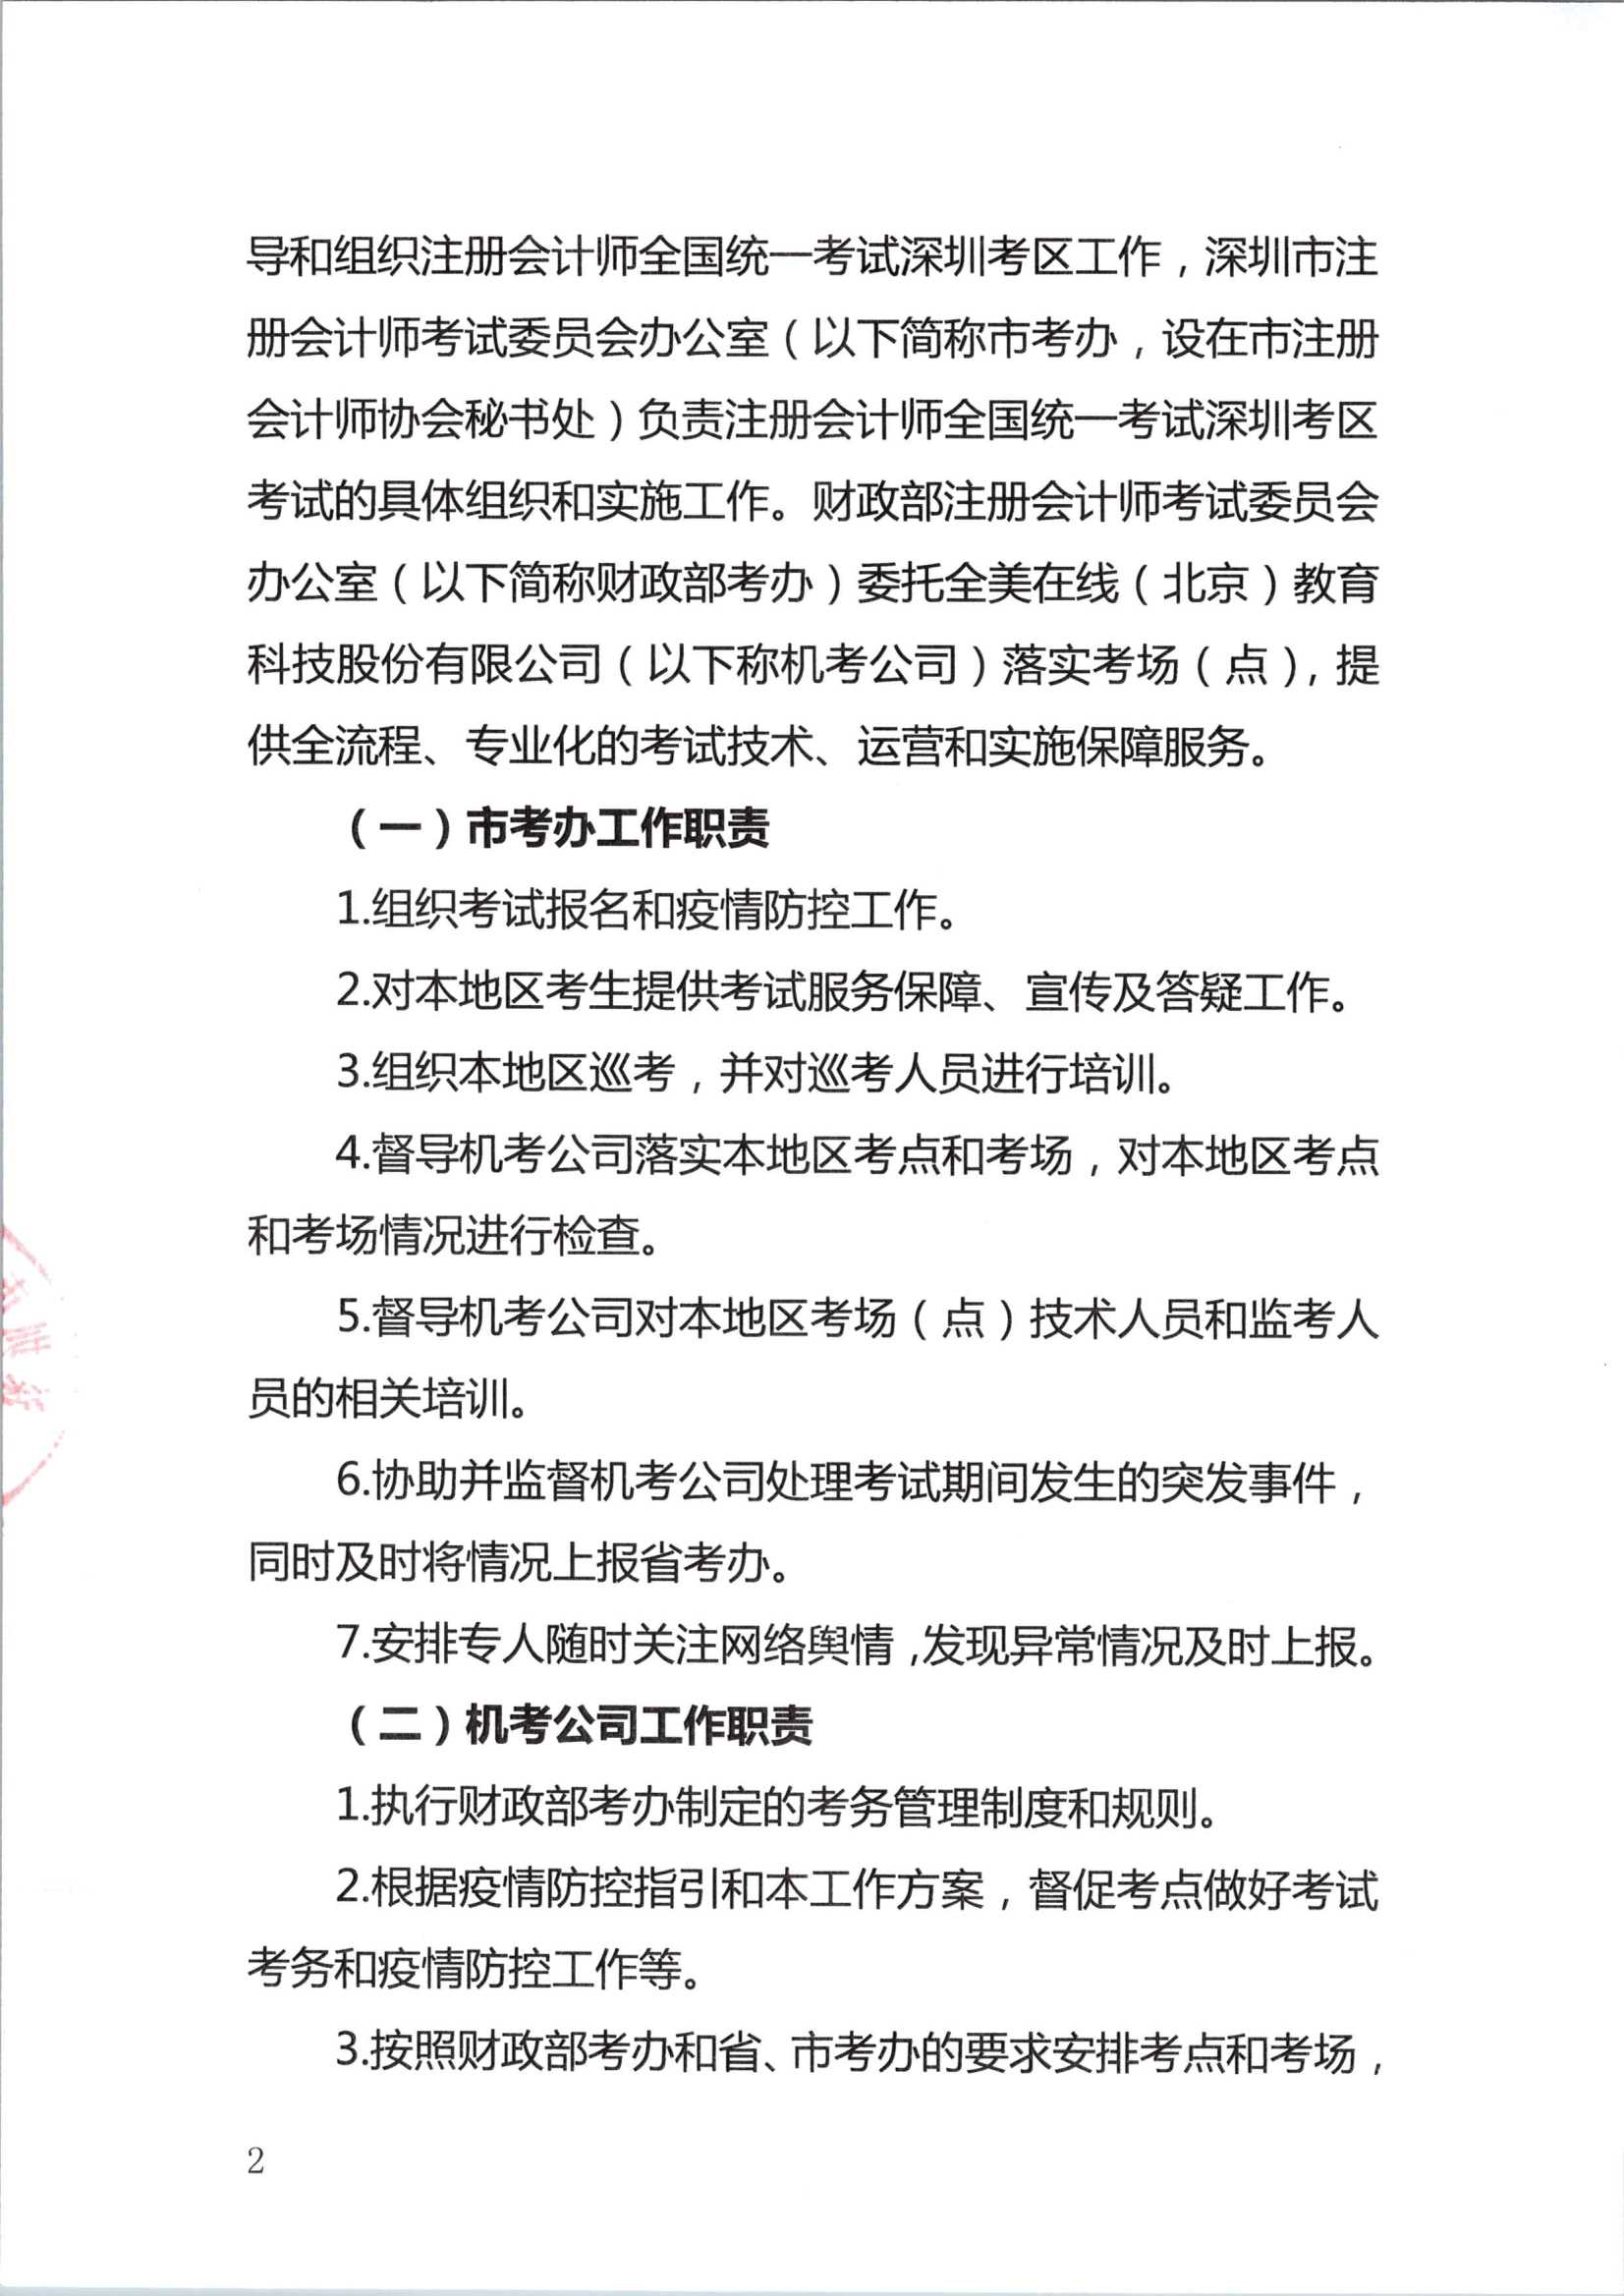 2020年注册会计师全国统一考试深圳考区工作方案_2.Png